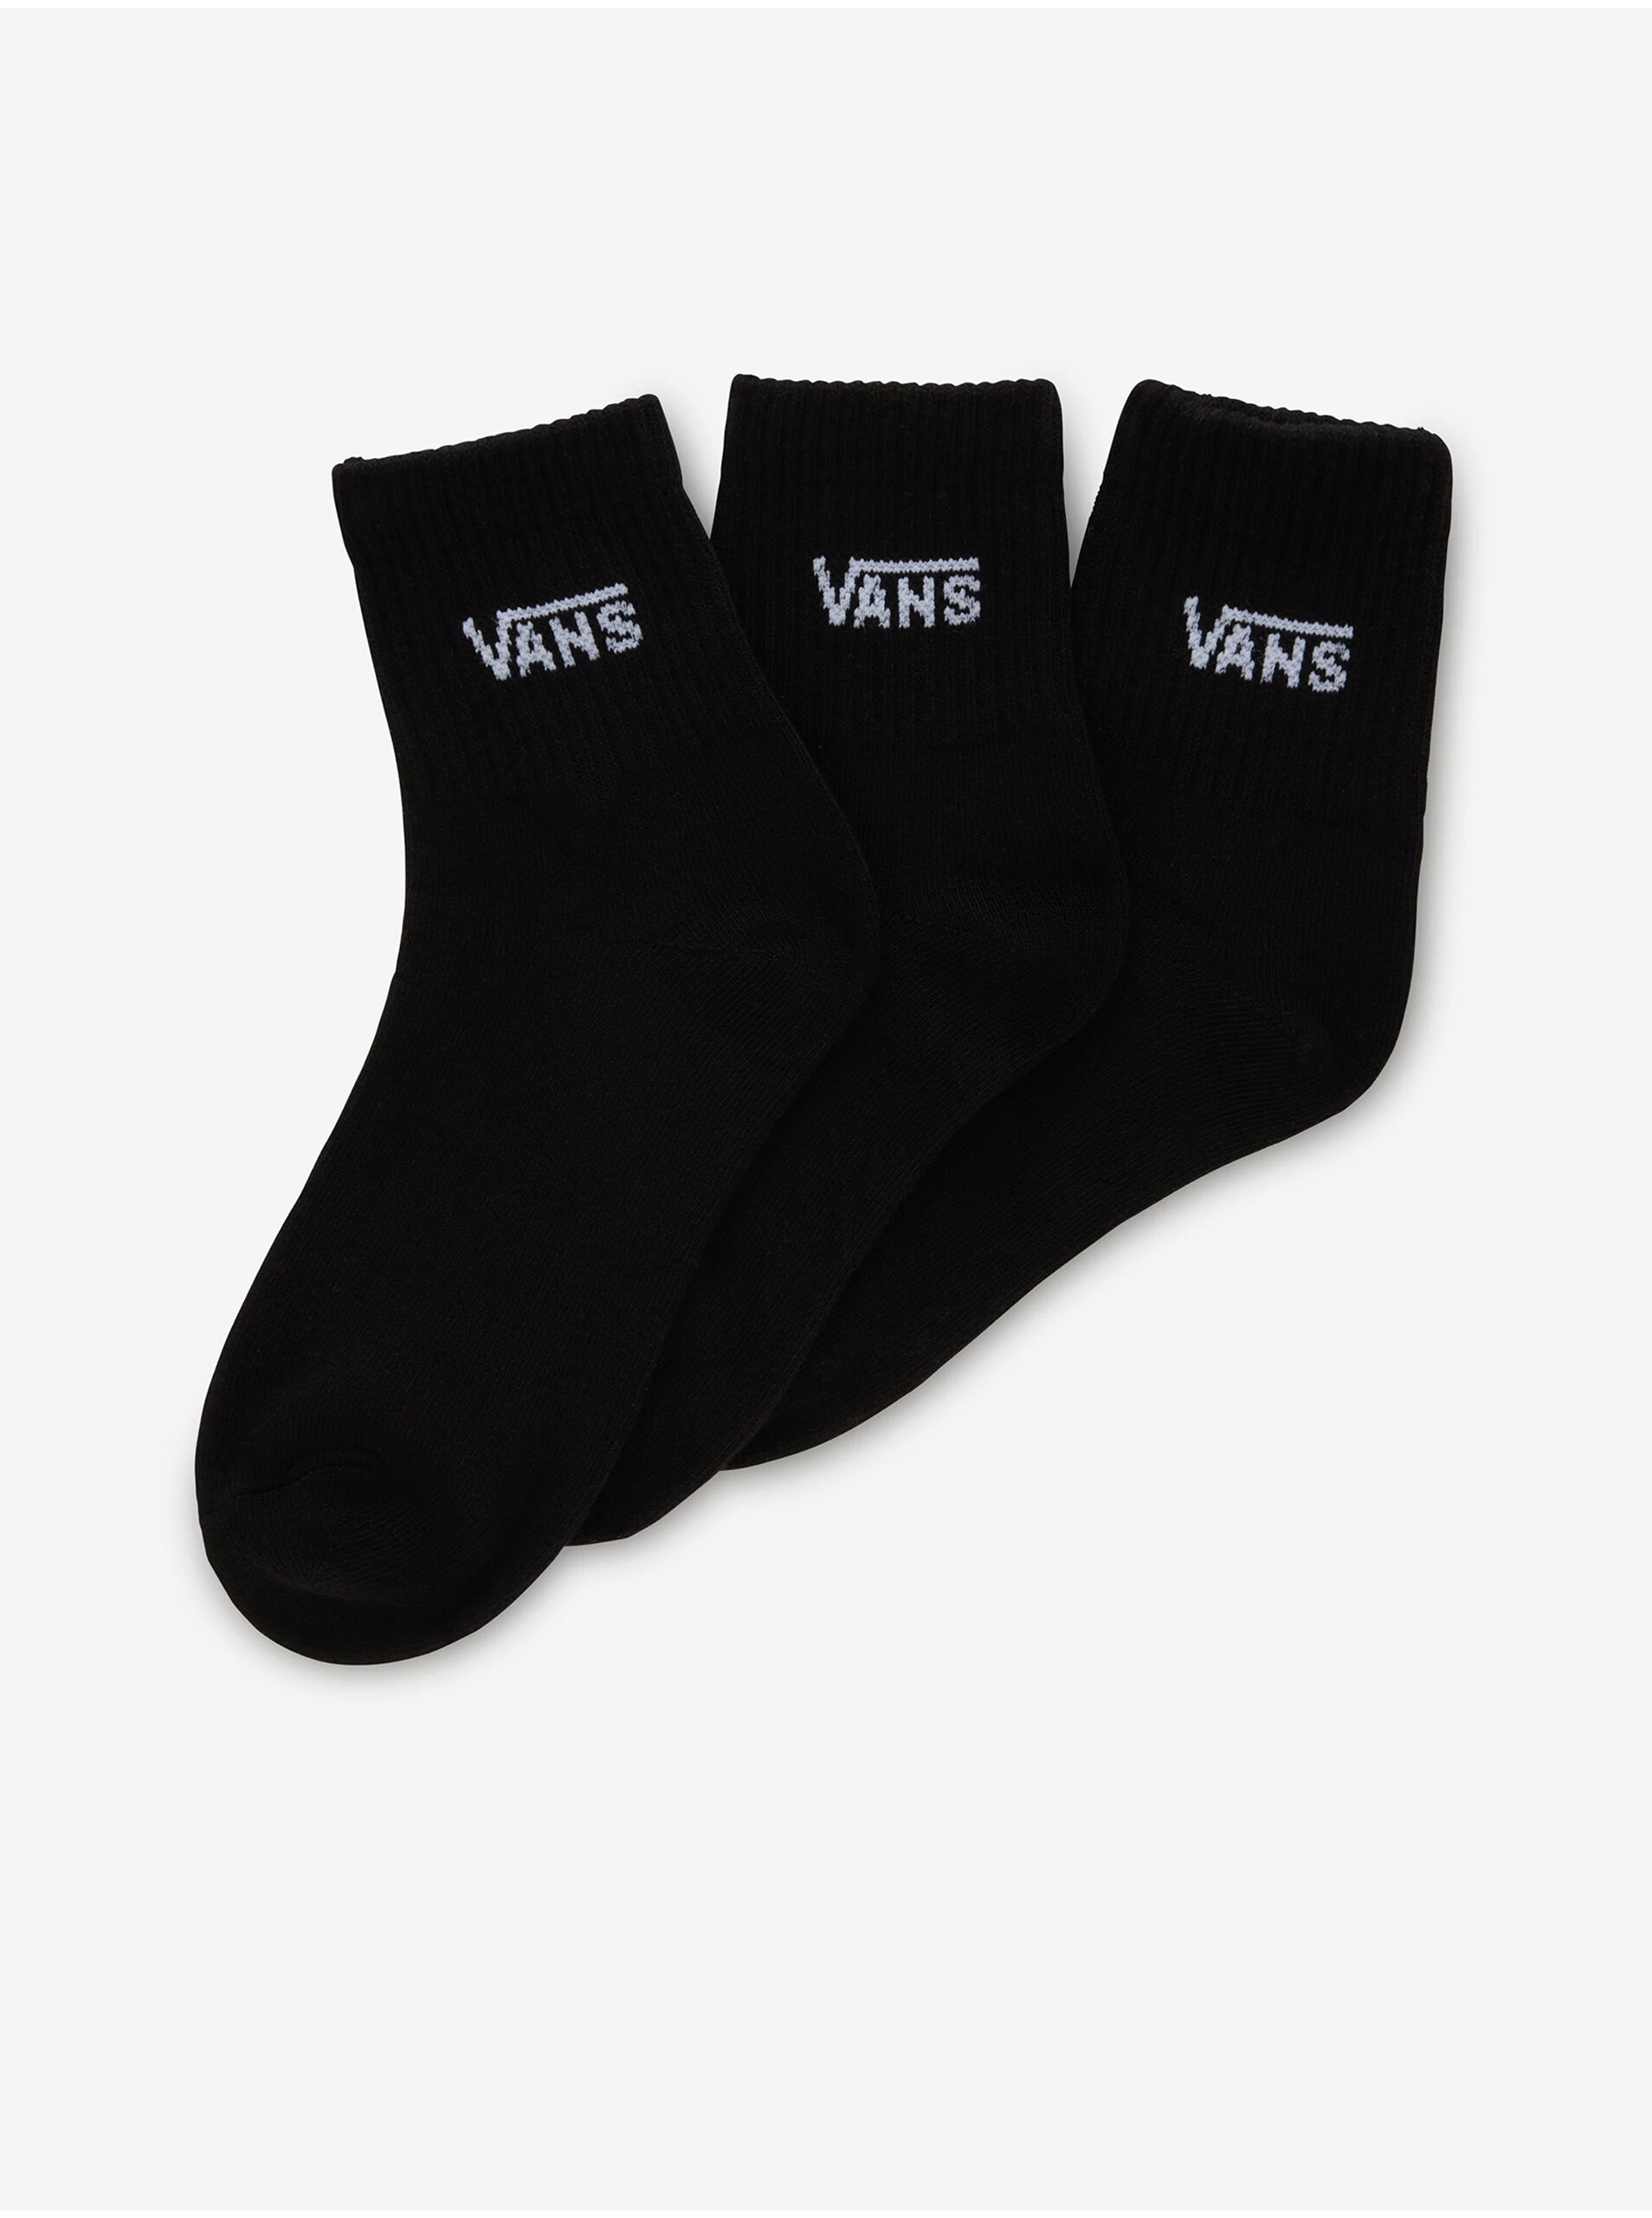 E-shop Sada tří párů dámských ponožek v černé barvě VANS Classic Half Crew